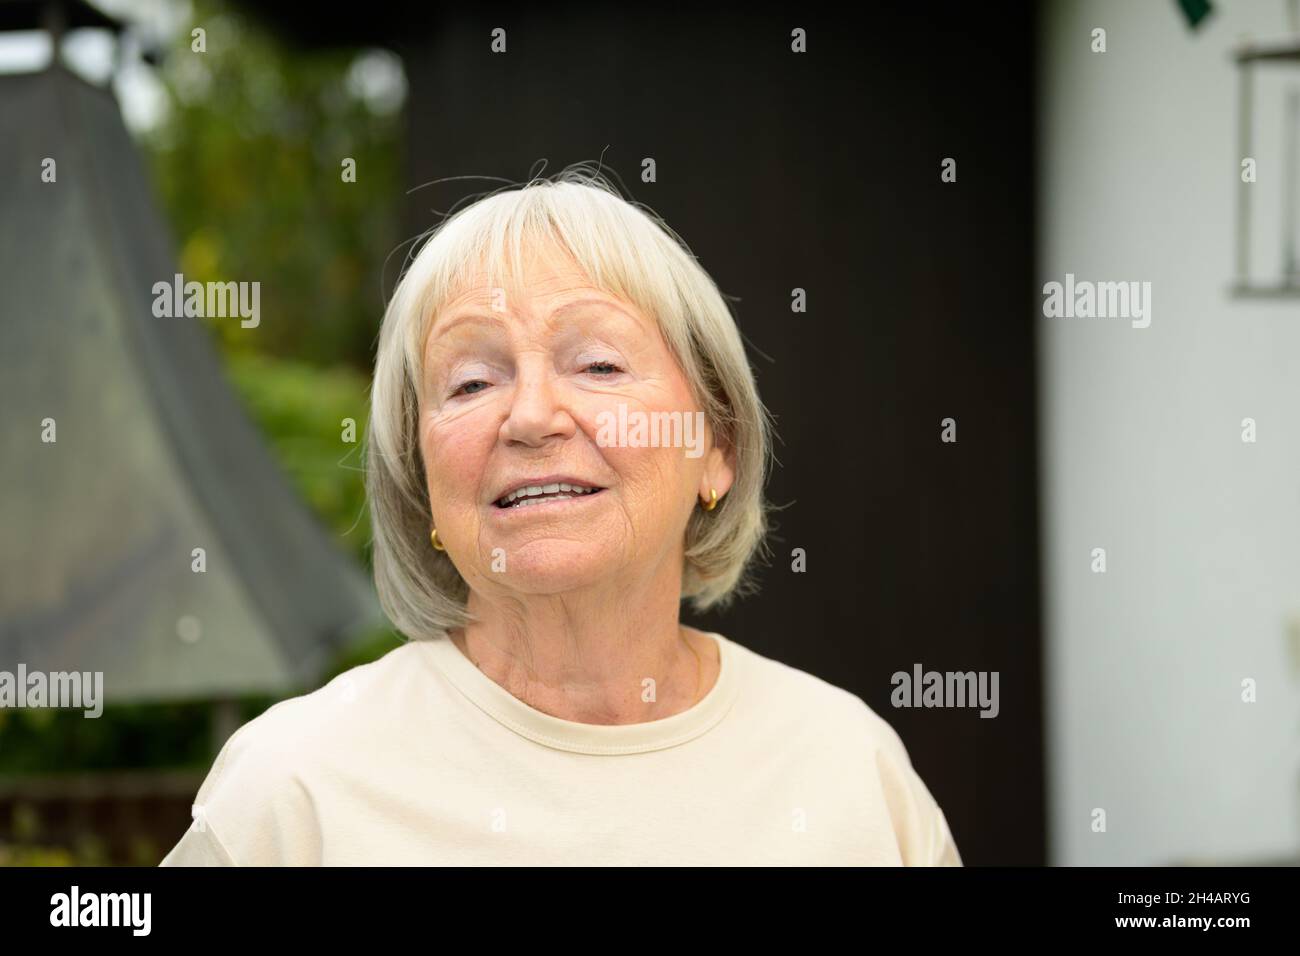 Gesprächige ältere Frau, die sich mit dem Betrachter in einem frontalen Kopf- und Schulterportrait im Freien in einem Park oder Garten unterhalten hat Stockfoto